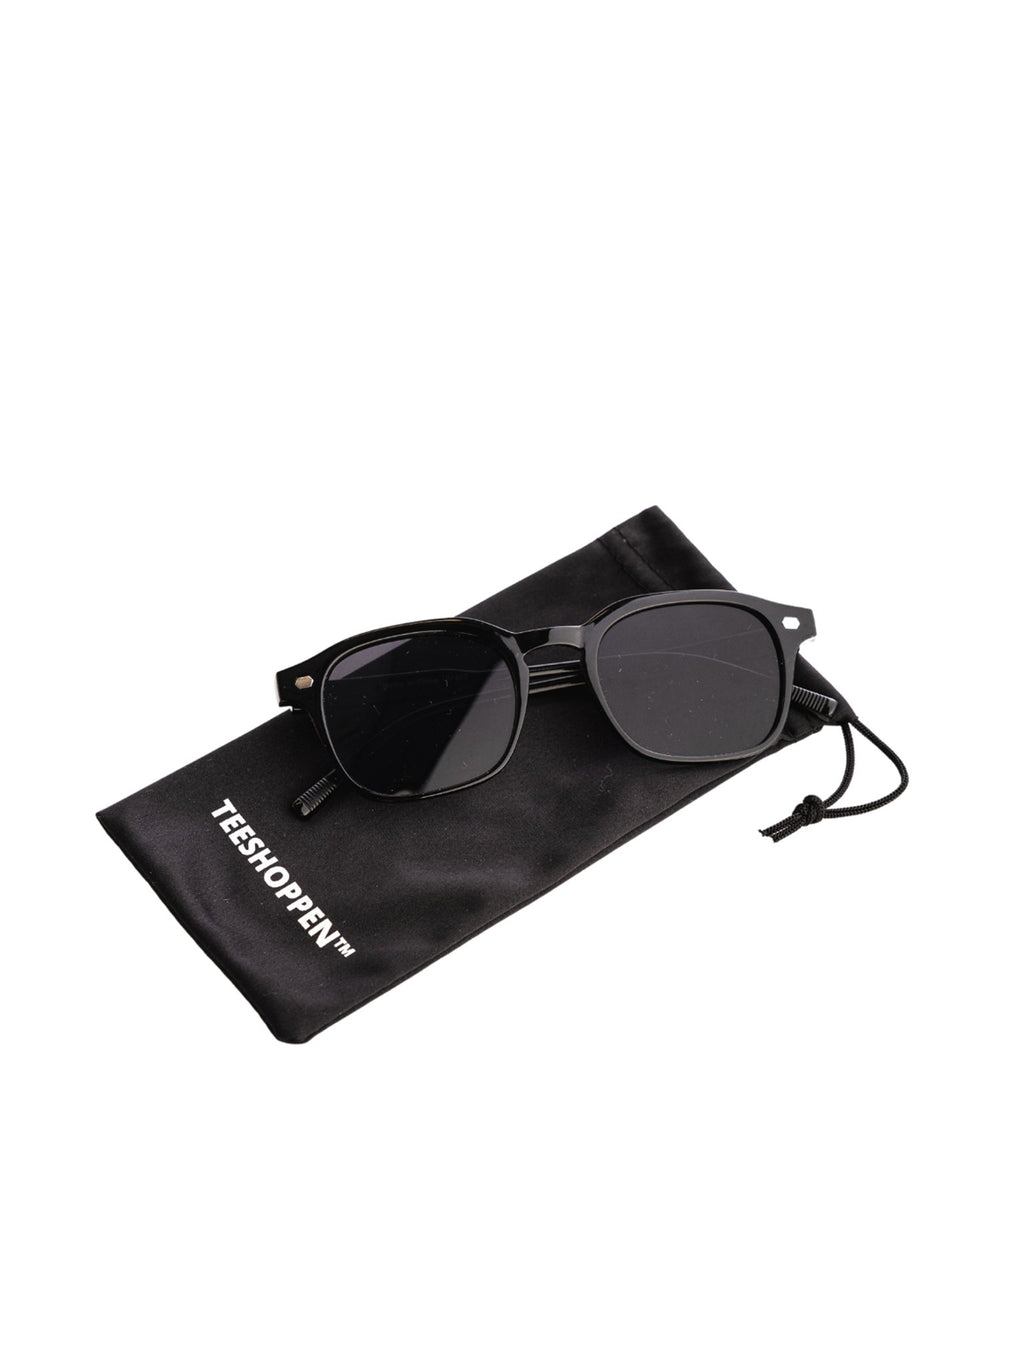 Quadratische Sonnenbrille - schwarz